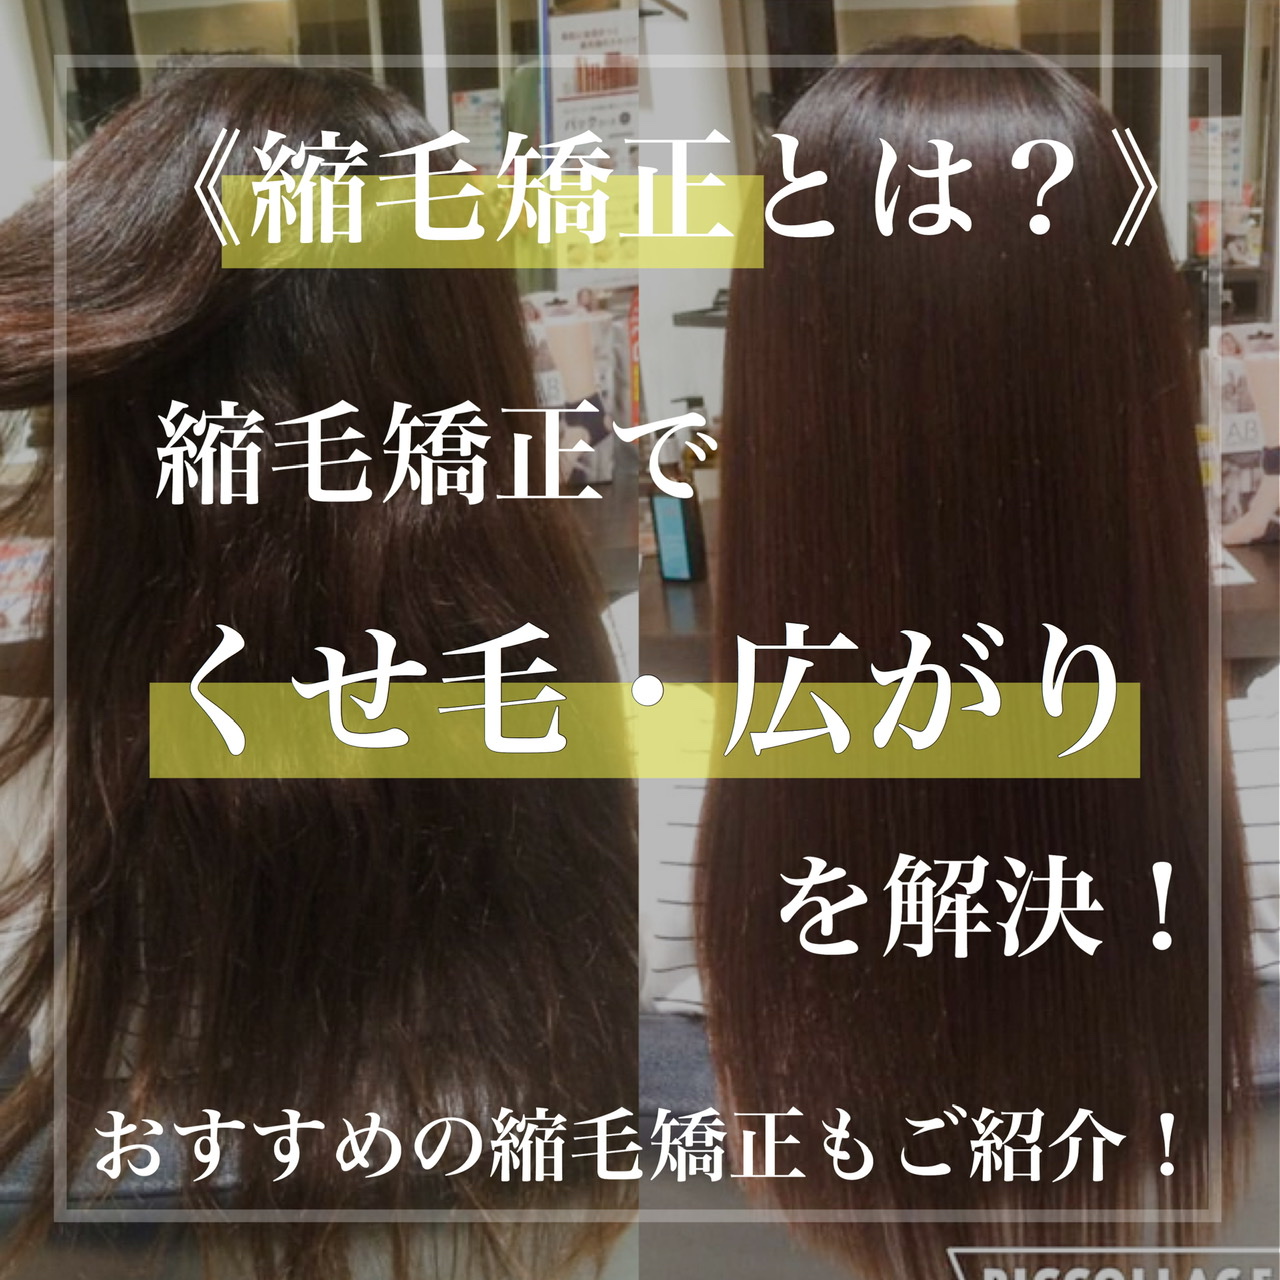 縮毛矯正とは 縮毛矯正でくせ毛 広がりを解決 おすすめの縮毛矯正もご紹介 奈良 京都 大阪の美容室 ハピネス